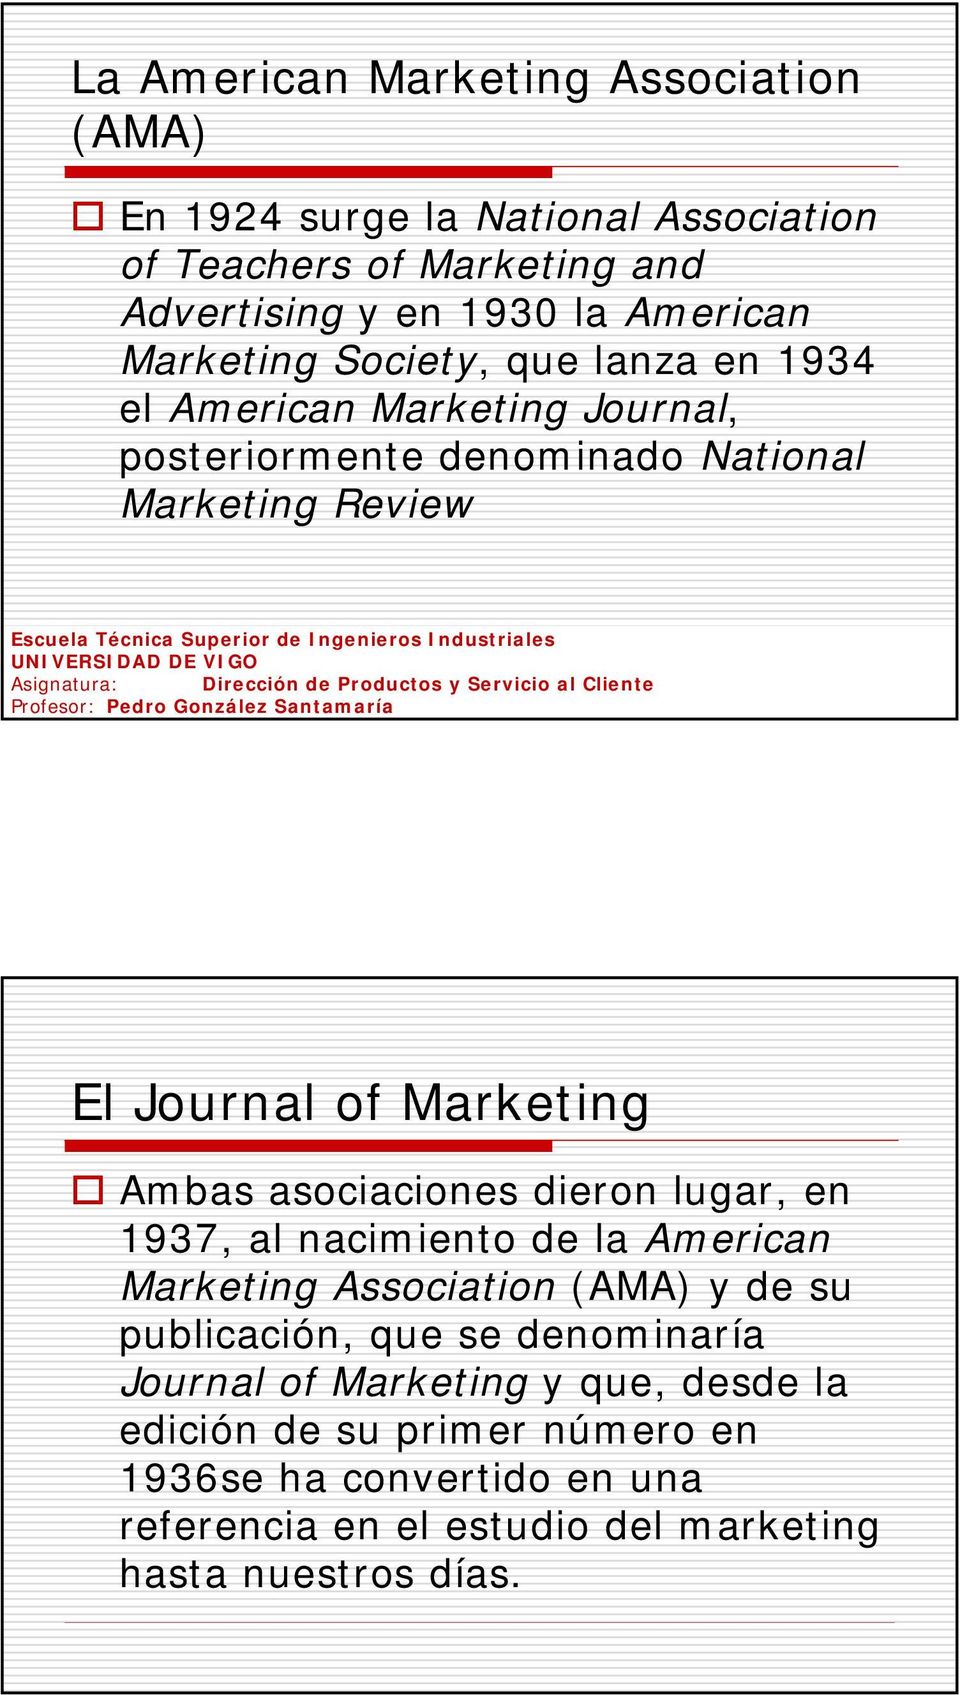 Ambas asociaciones dieron lugar, en 1937, al nacimiento de la American Marketing Association (AMA) y de su publicación, que se denominaría